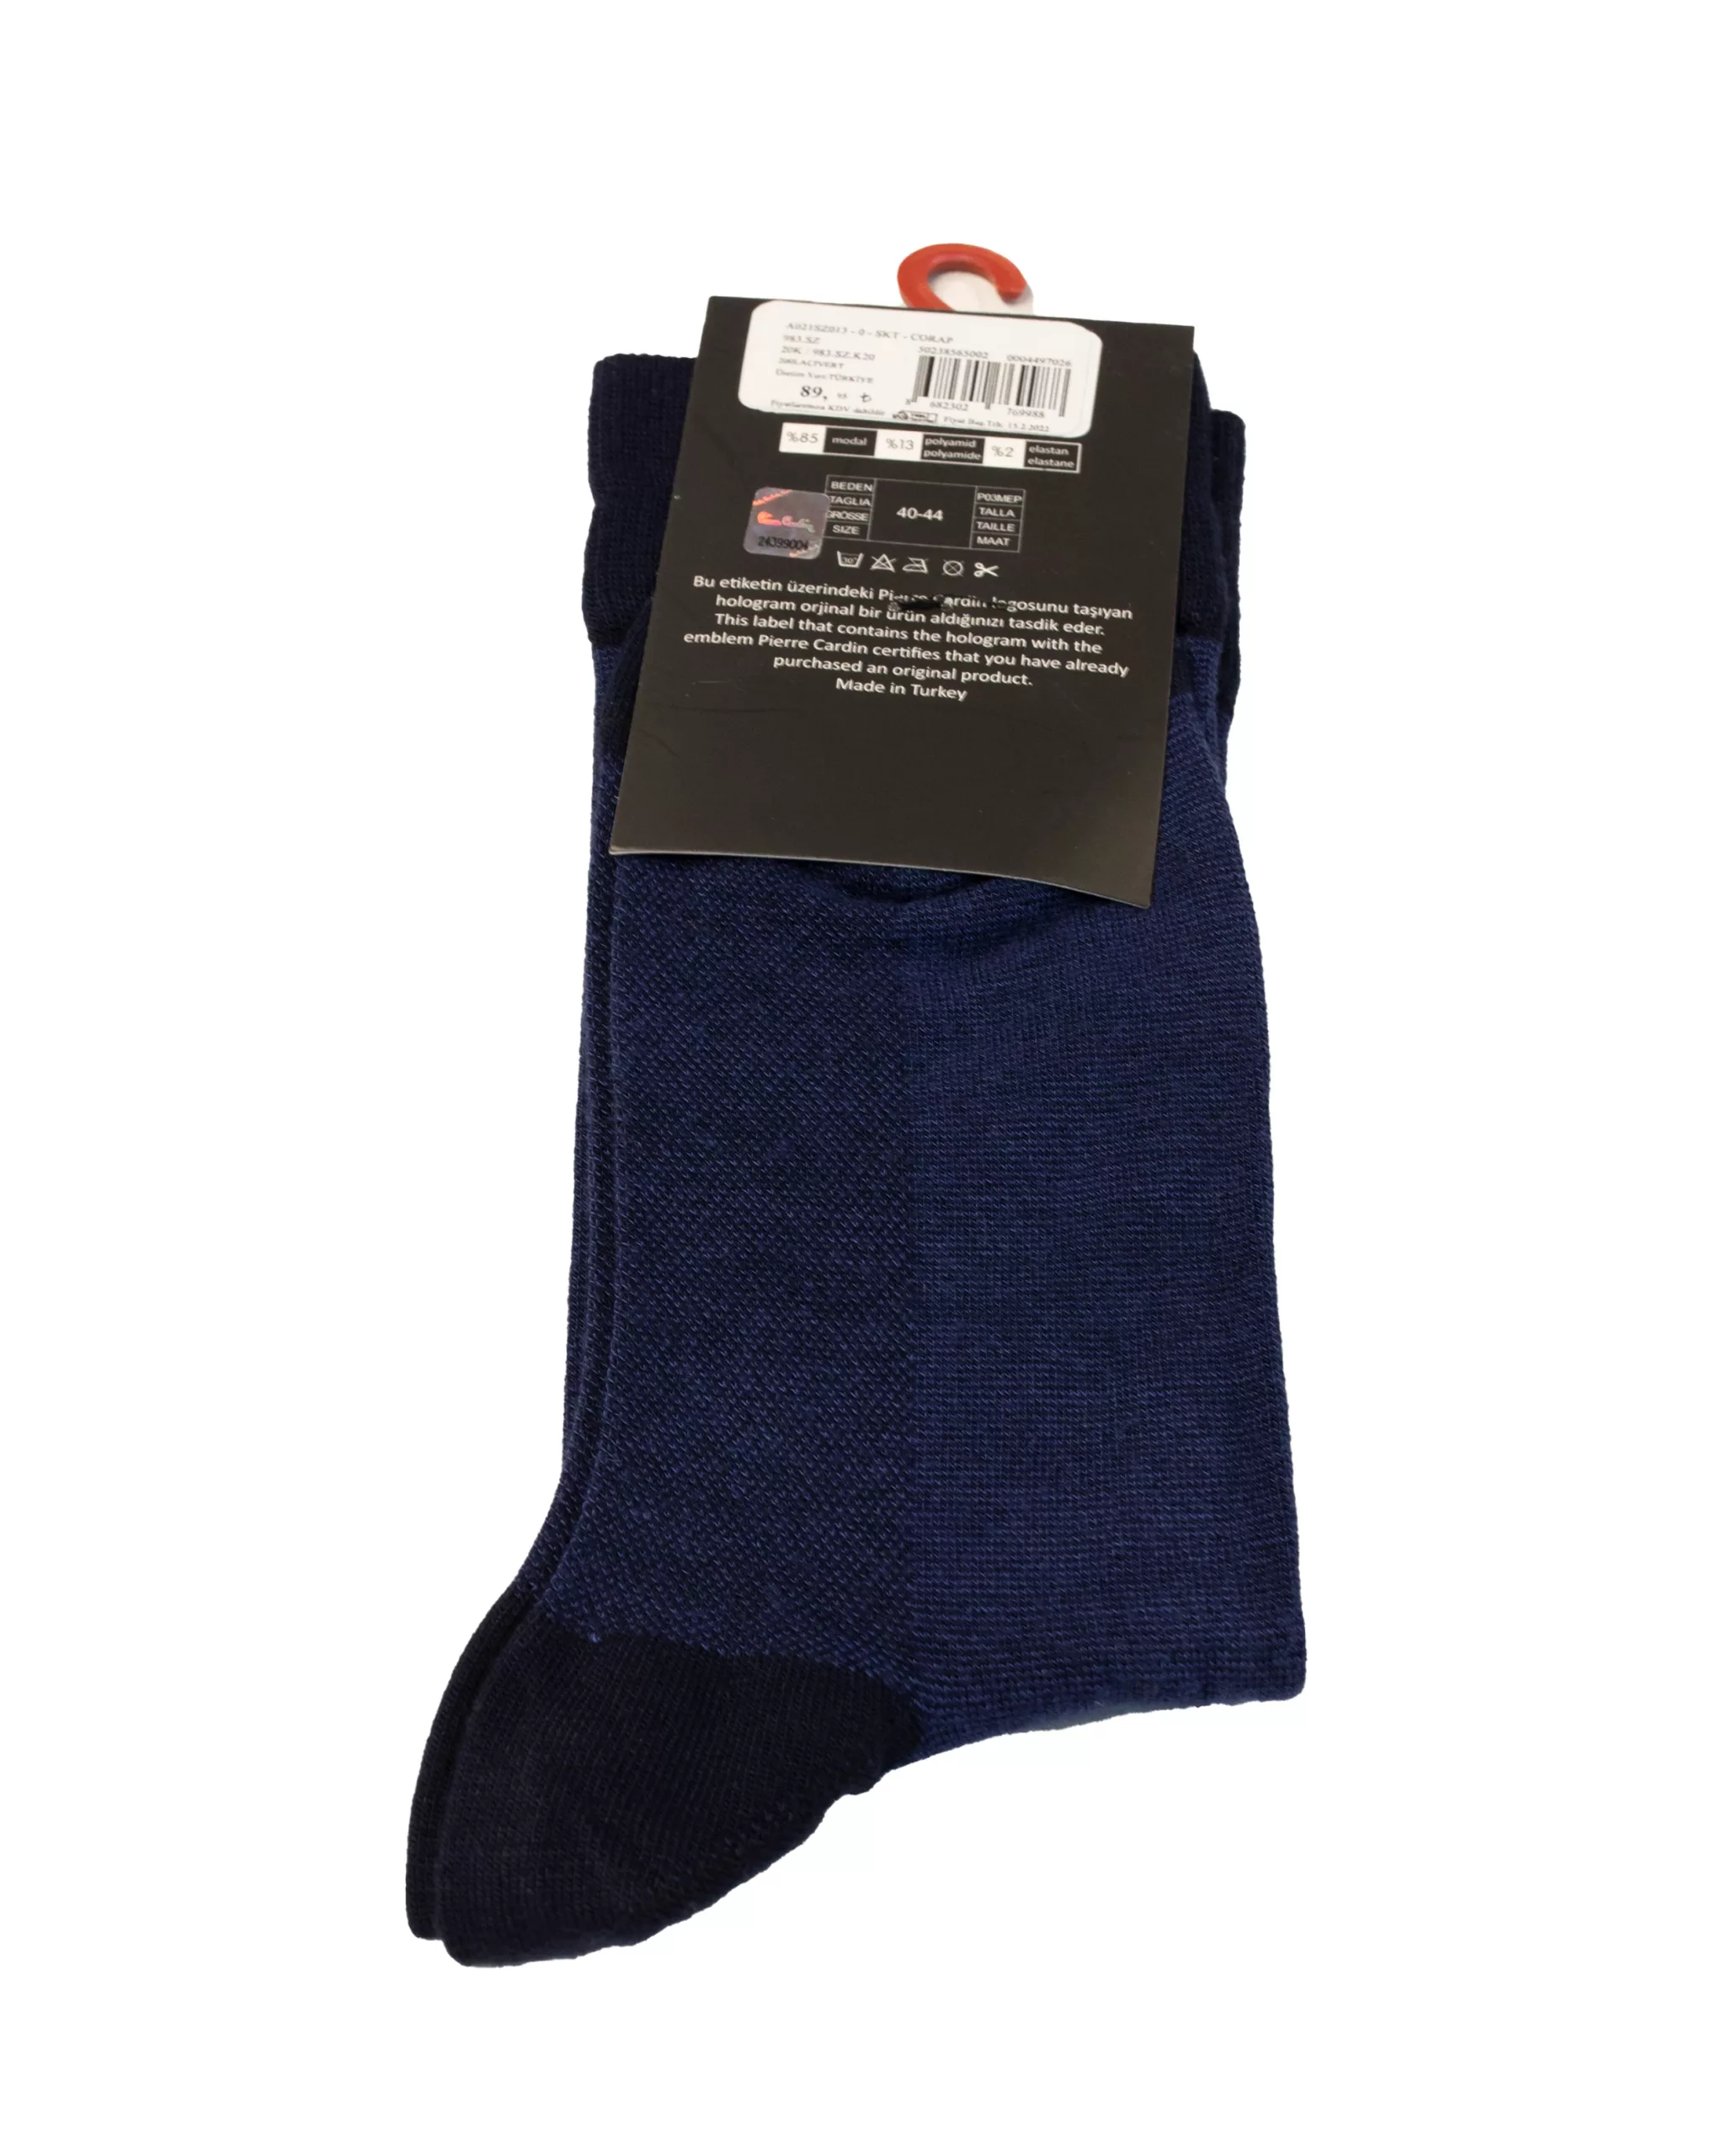 Gela dark blue socks